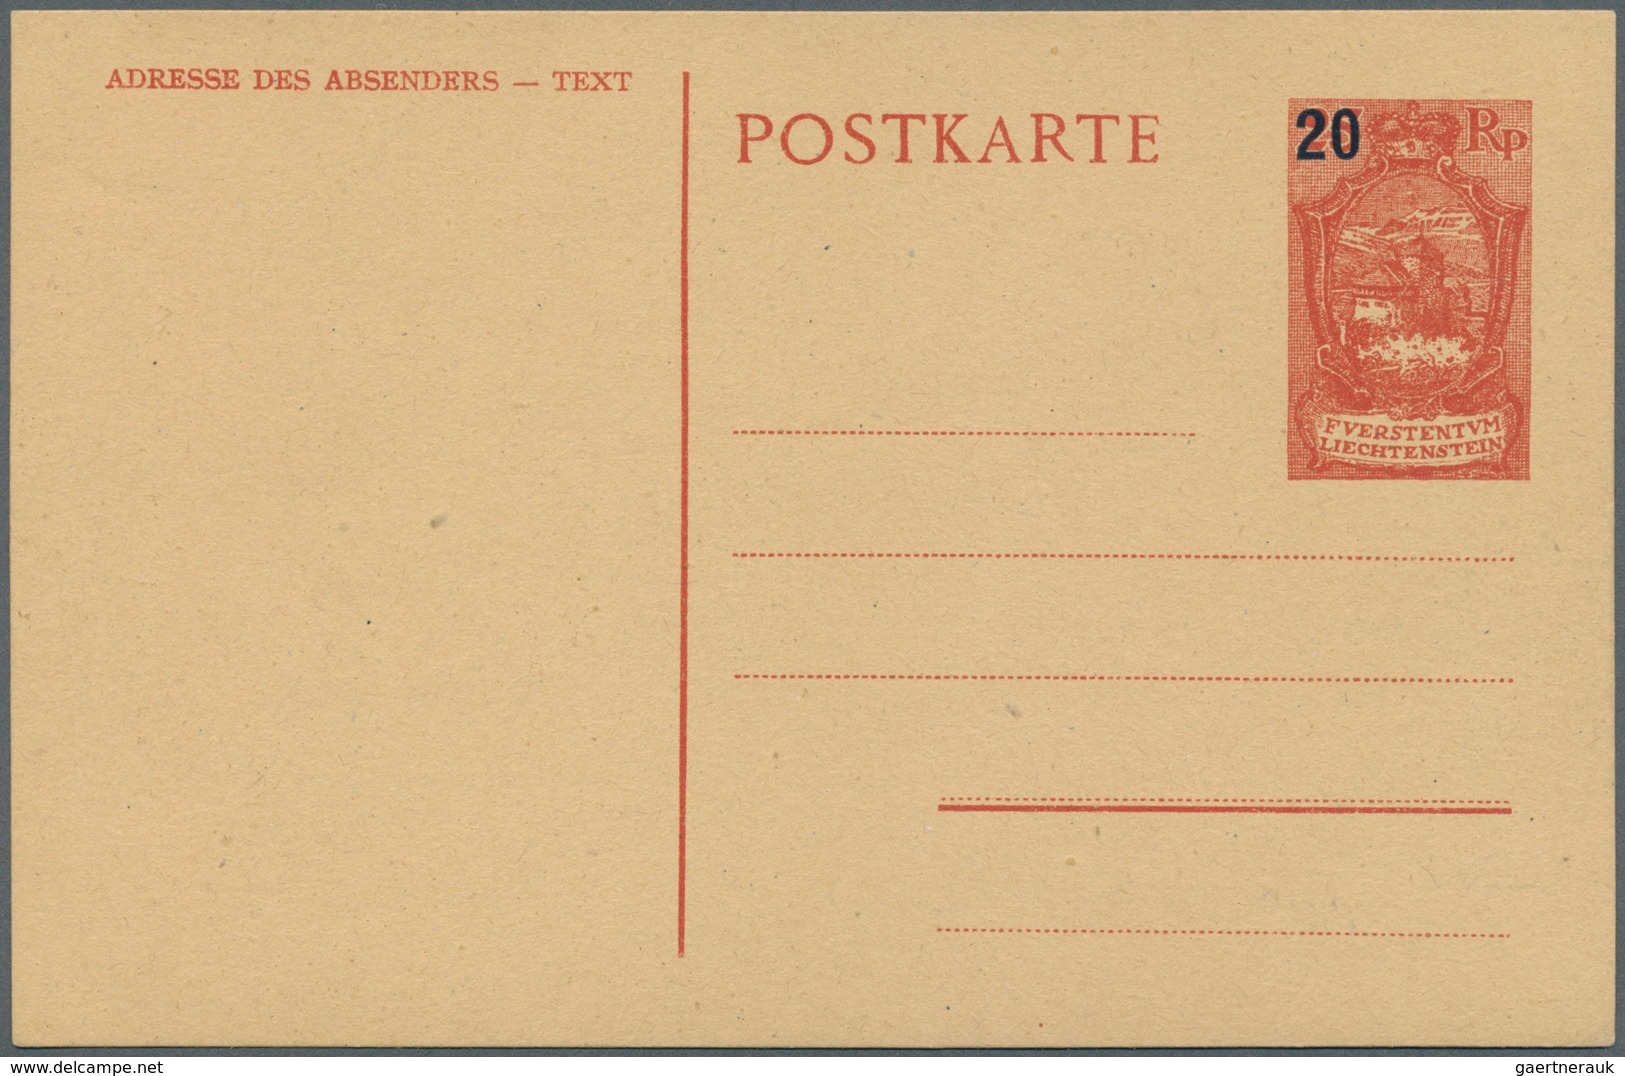 27201 Liechtenstein: 1918/1960, netter Sammlungsposten von über 100 Briefen und Ganzsachen, dabei bessere